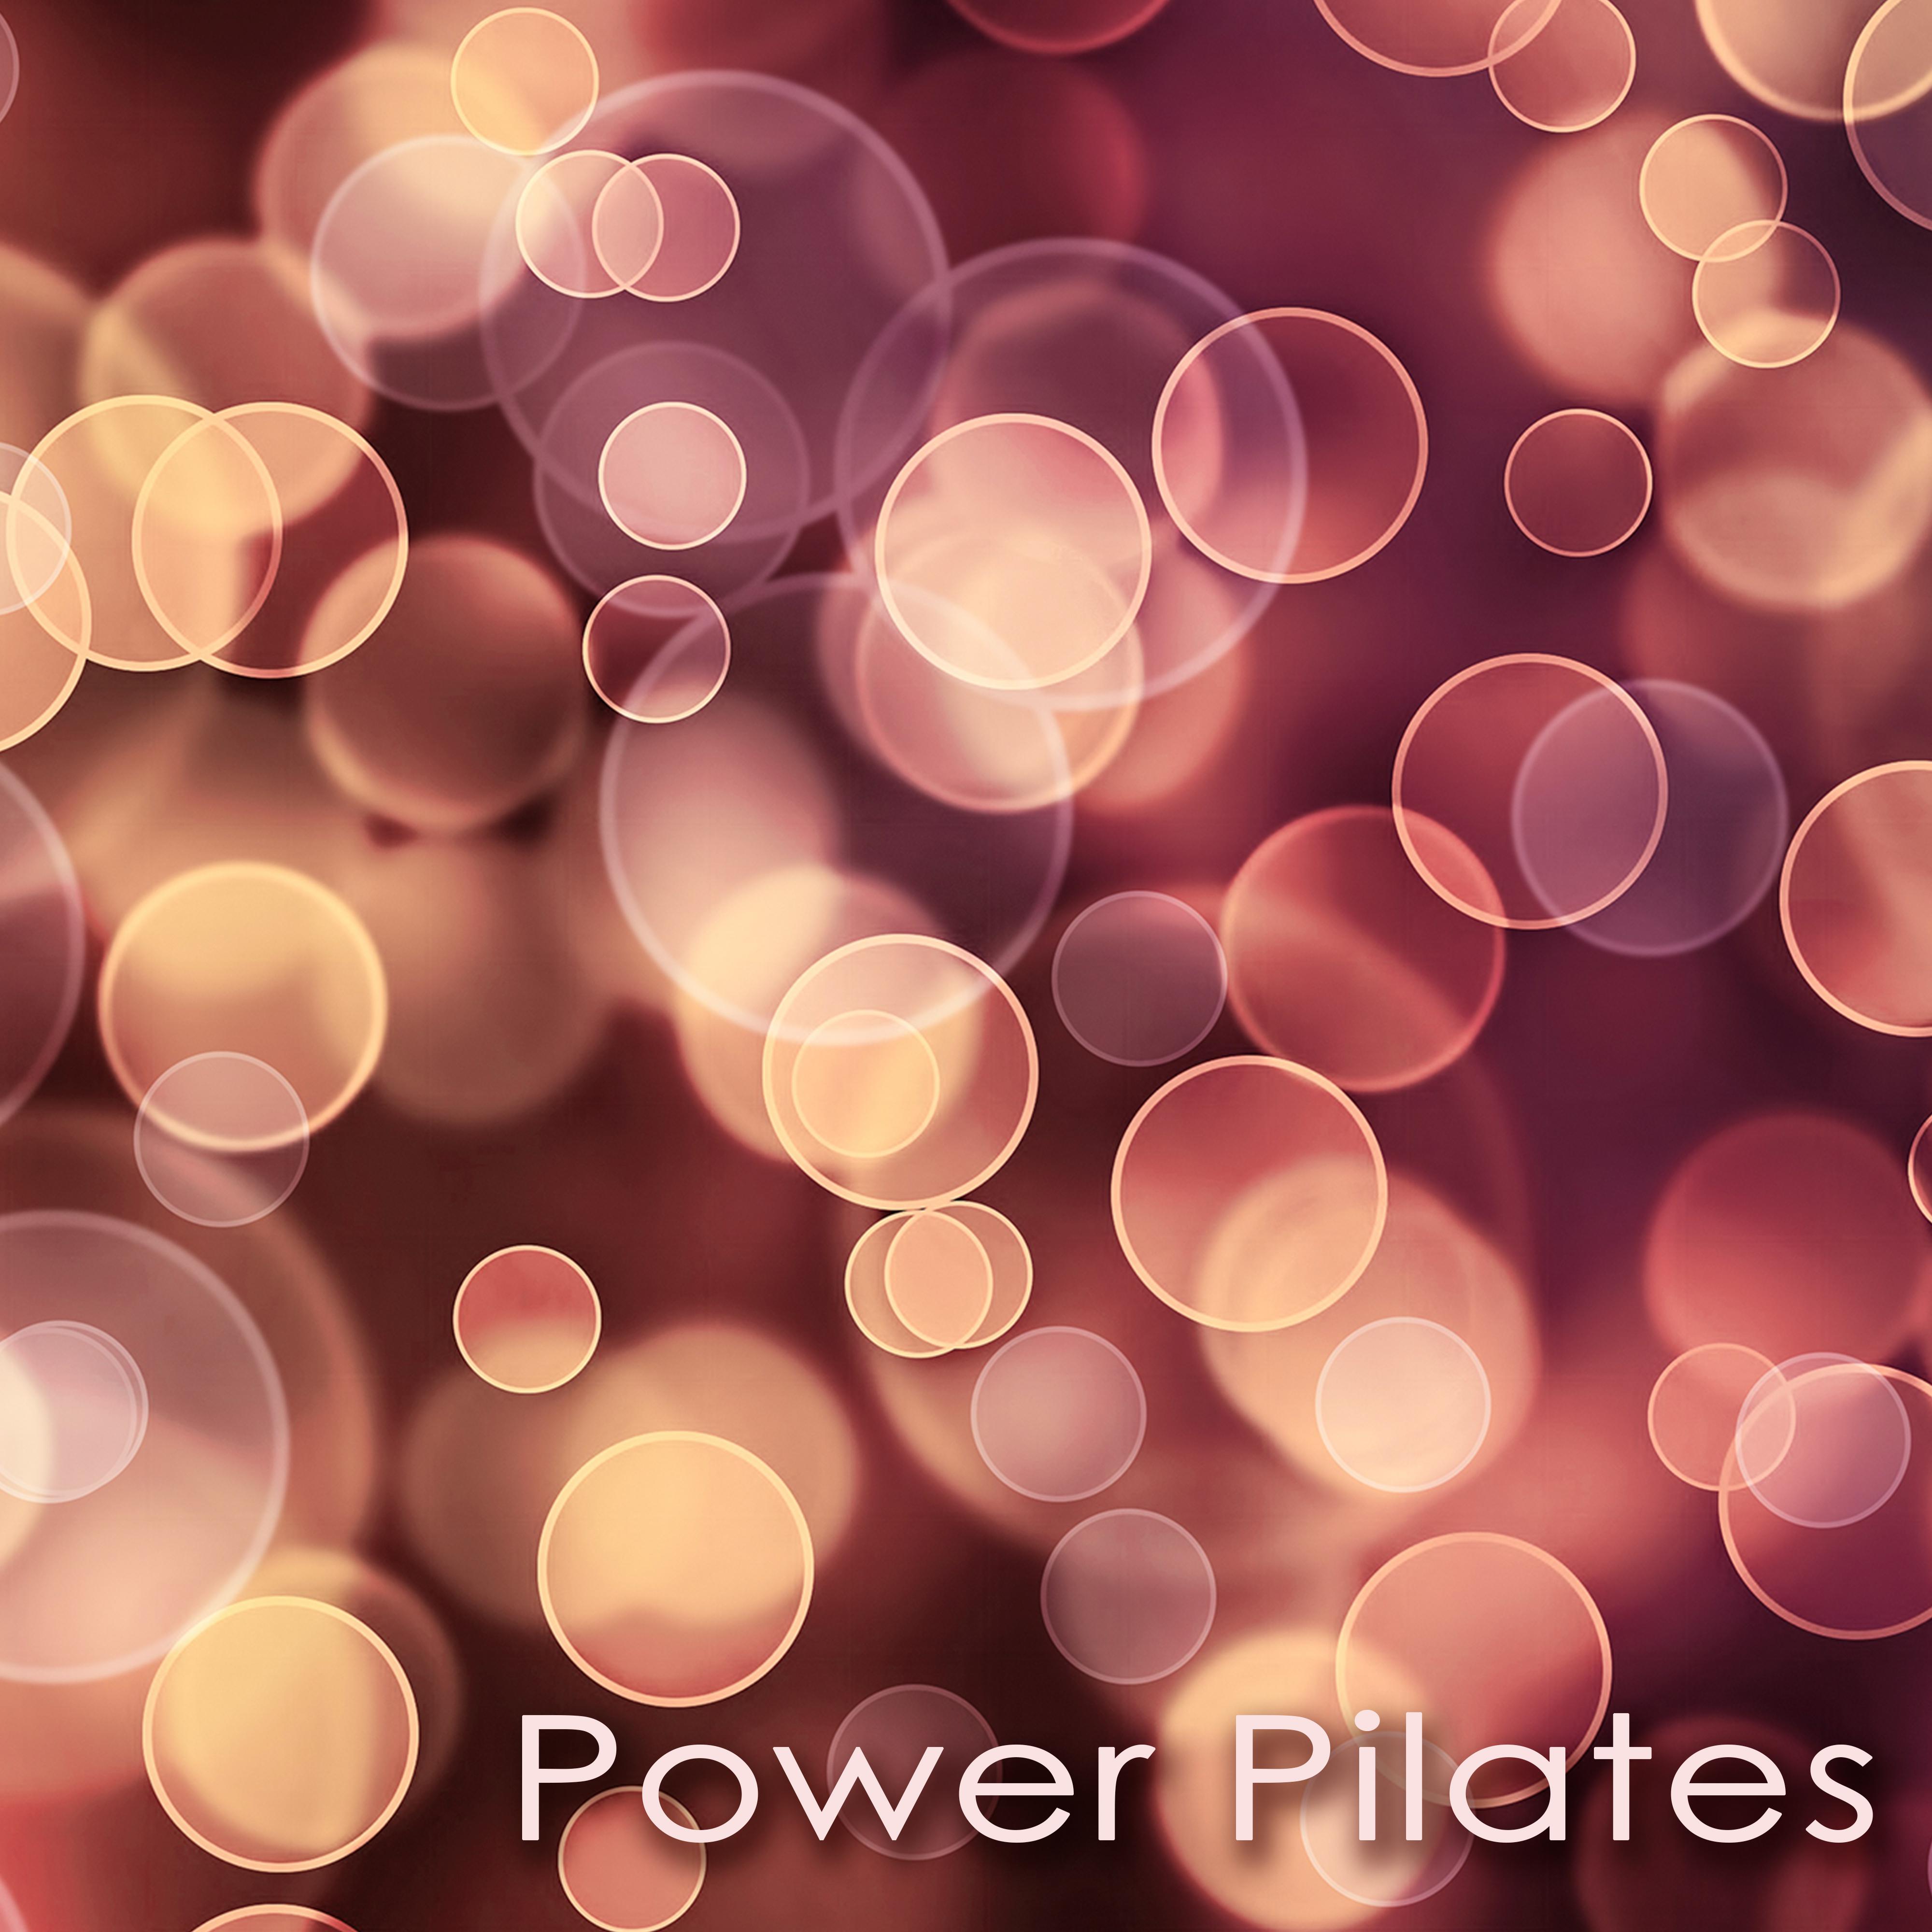 Power Pilates Workout Songs – World Music for Power Pilates & Power Yoga, New Age Ambient Music for Asana, Meditation, Breathing, Pranayama & Shavasana